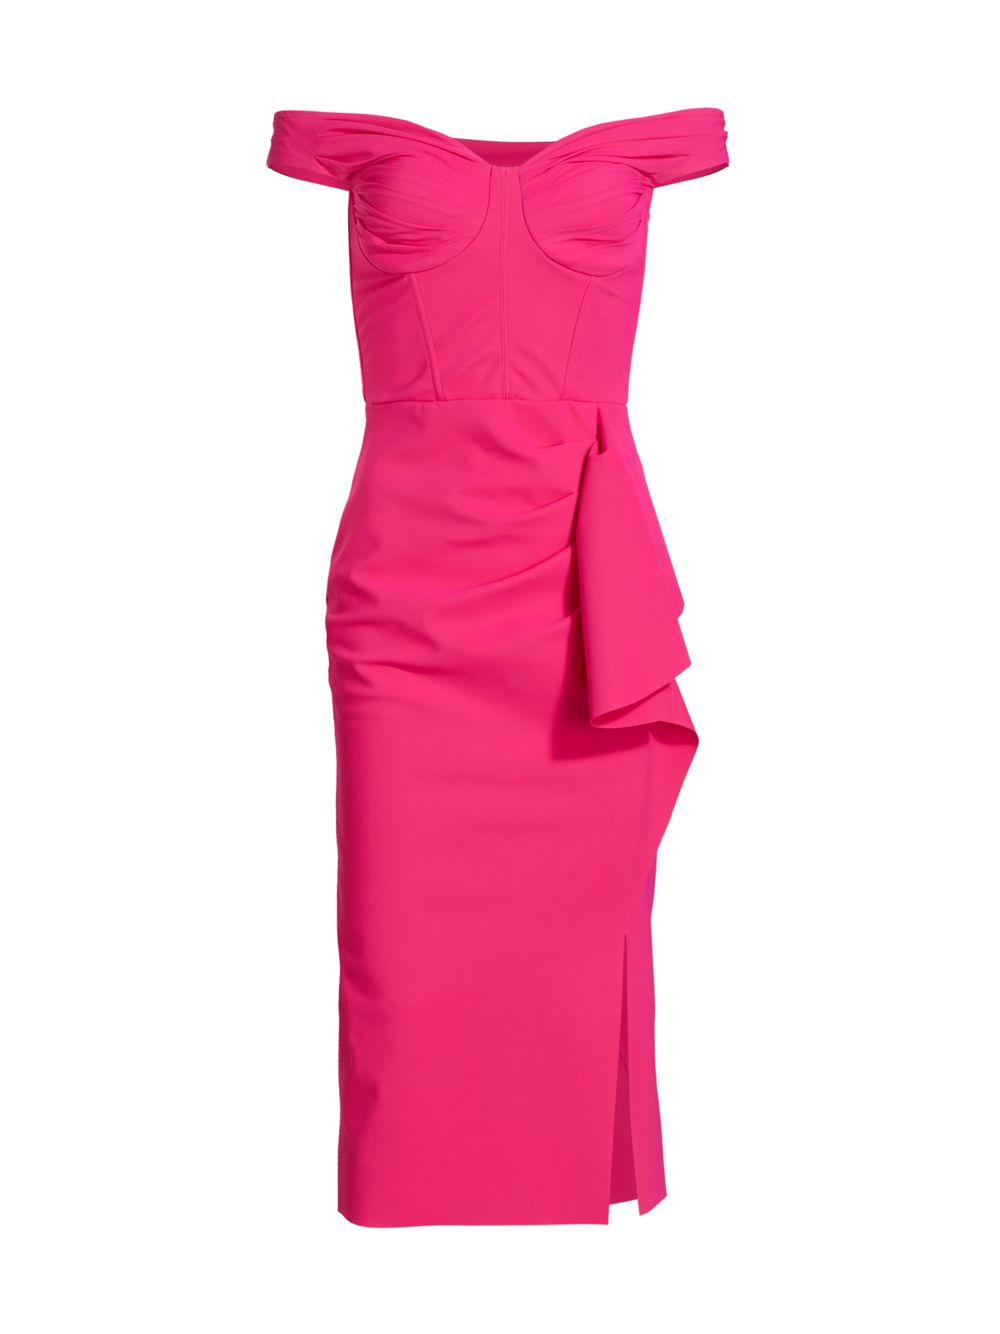 Коктейльное платье Madama с оборками и открытыми плечами Chiara Boni La Petite Robe, розовый